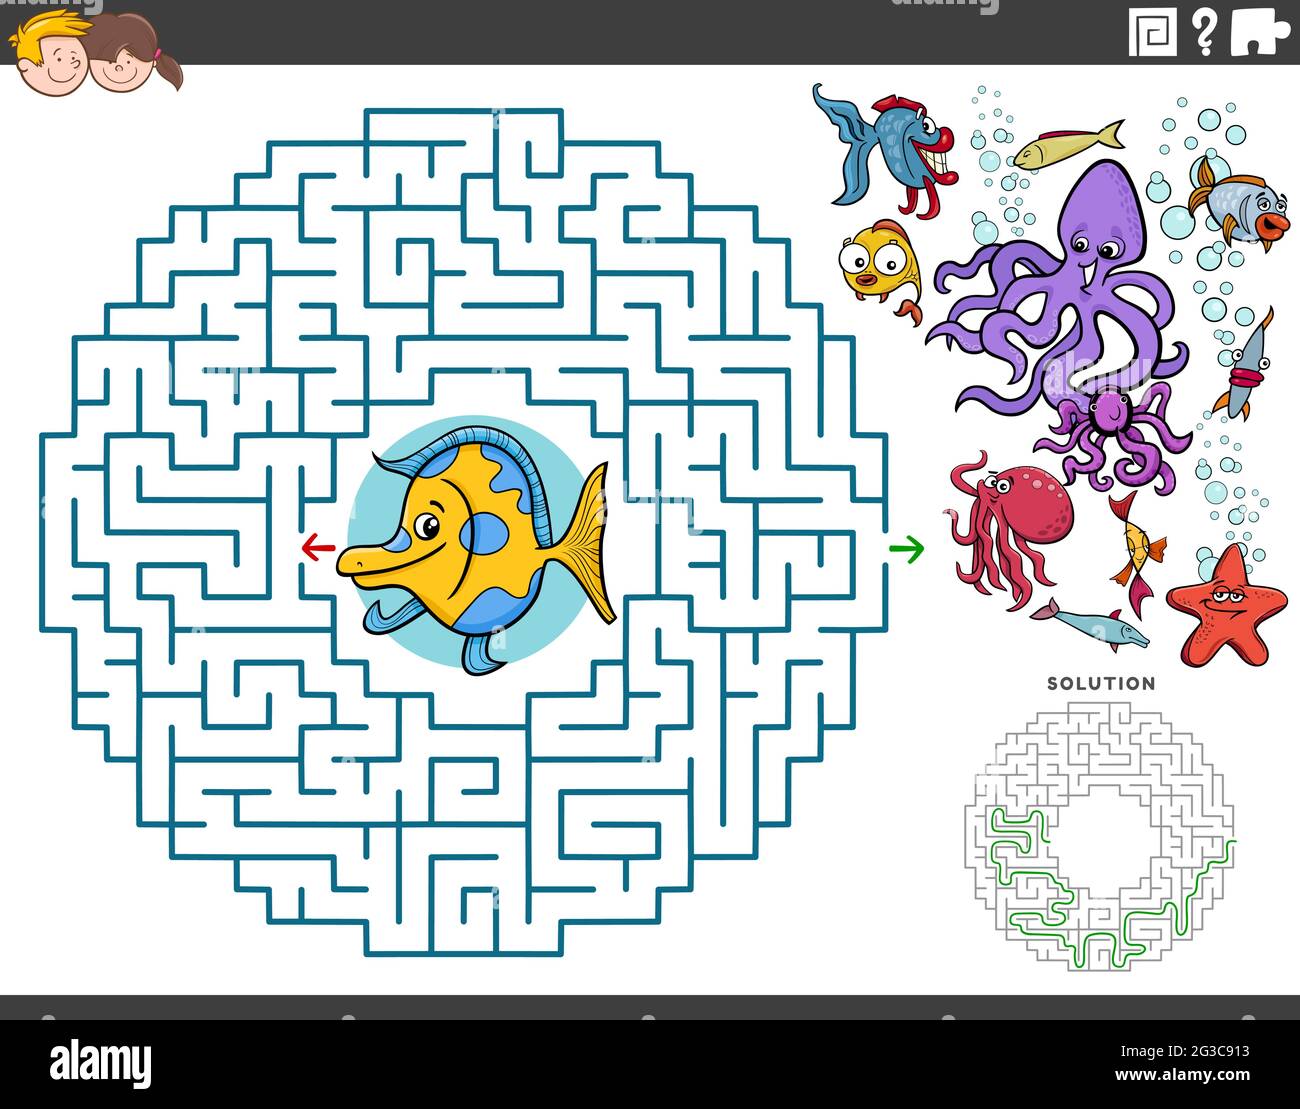 Dessin animé illustration du jeu de puzzle éducatif de labyrinthe pour les enfants avec les personnages drôles de poissons et d'animaux de mer Illustration de Vecteur